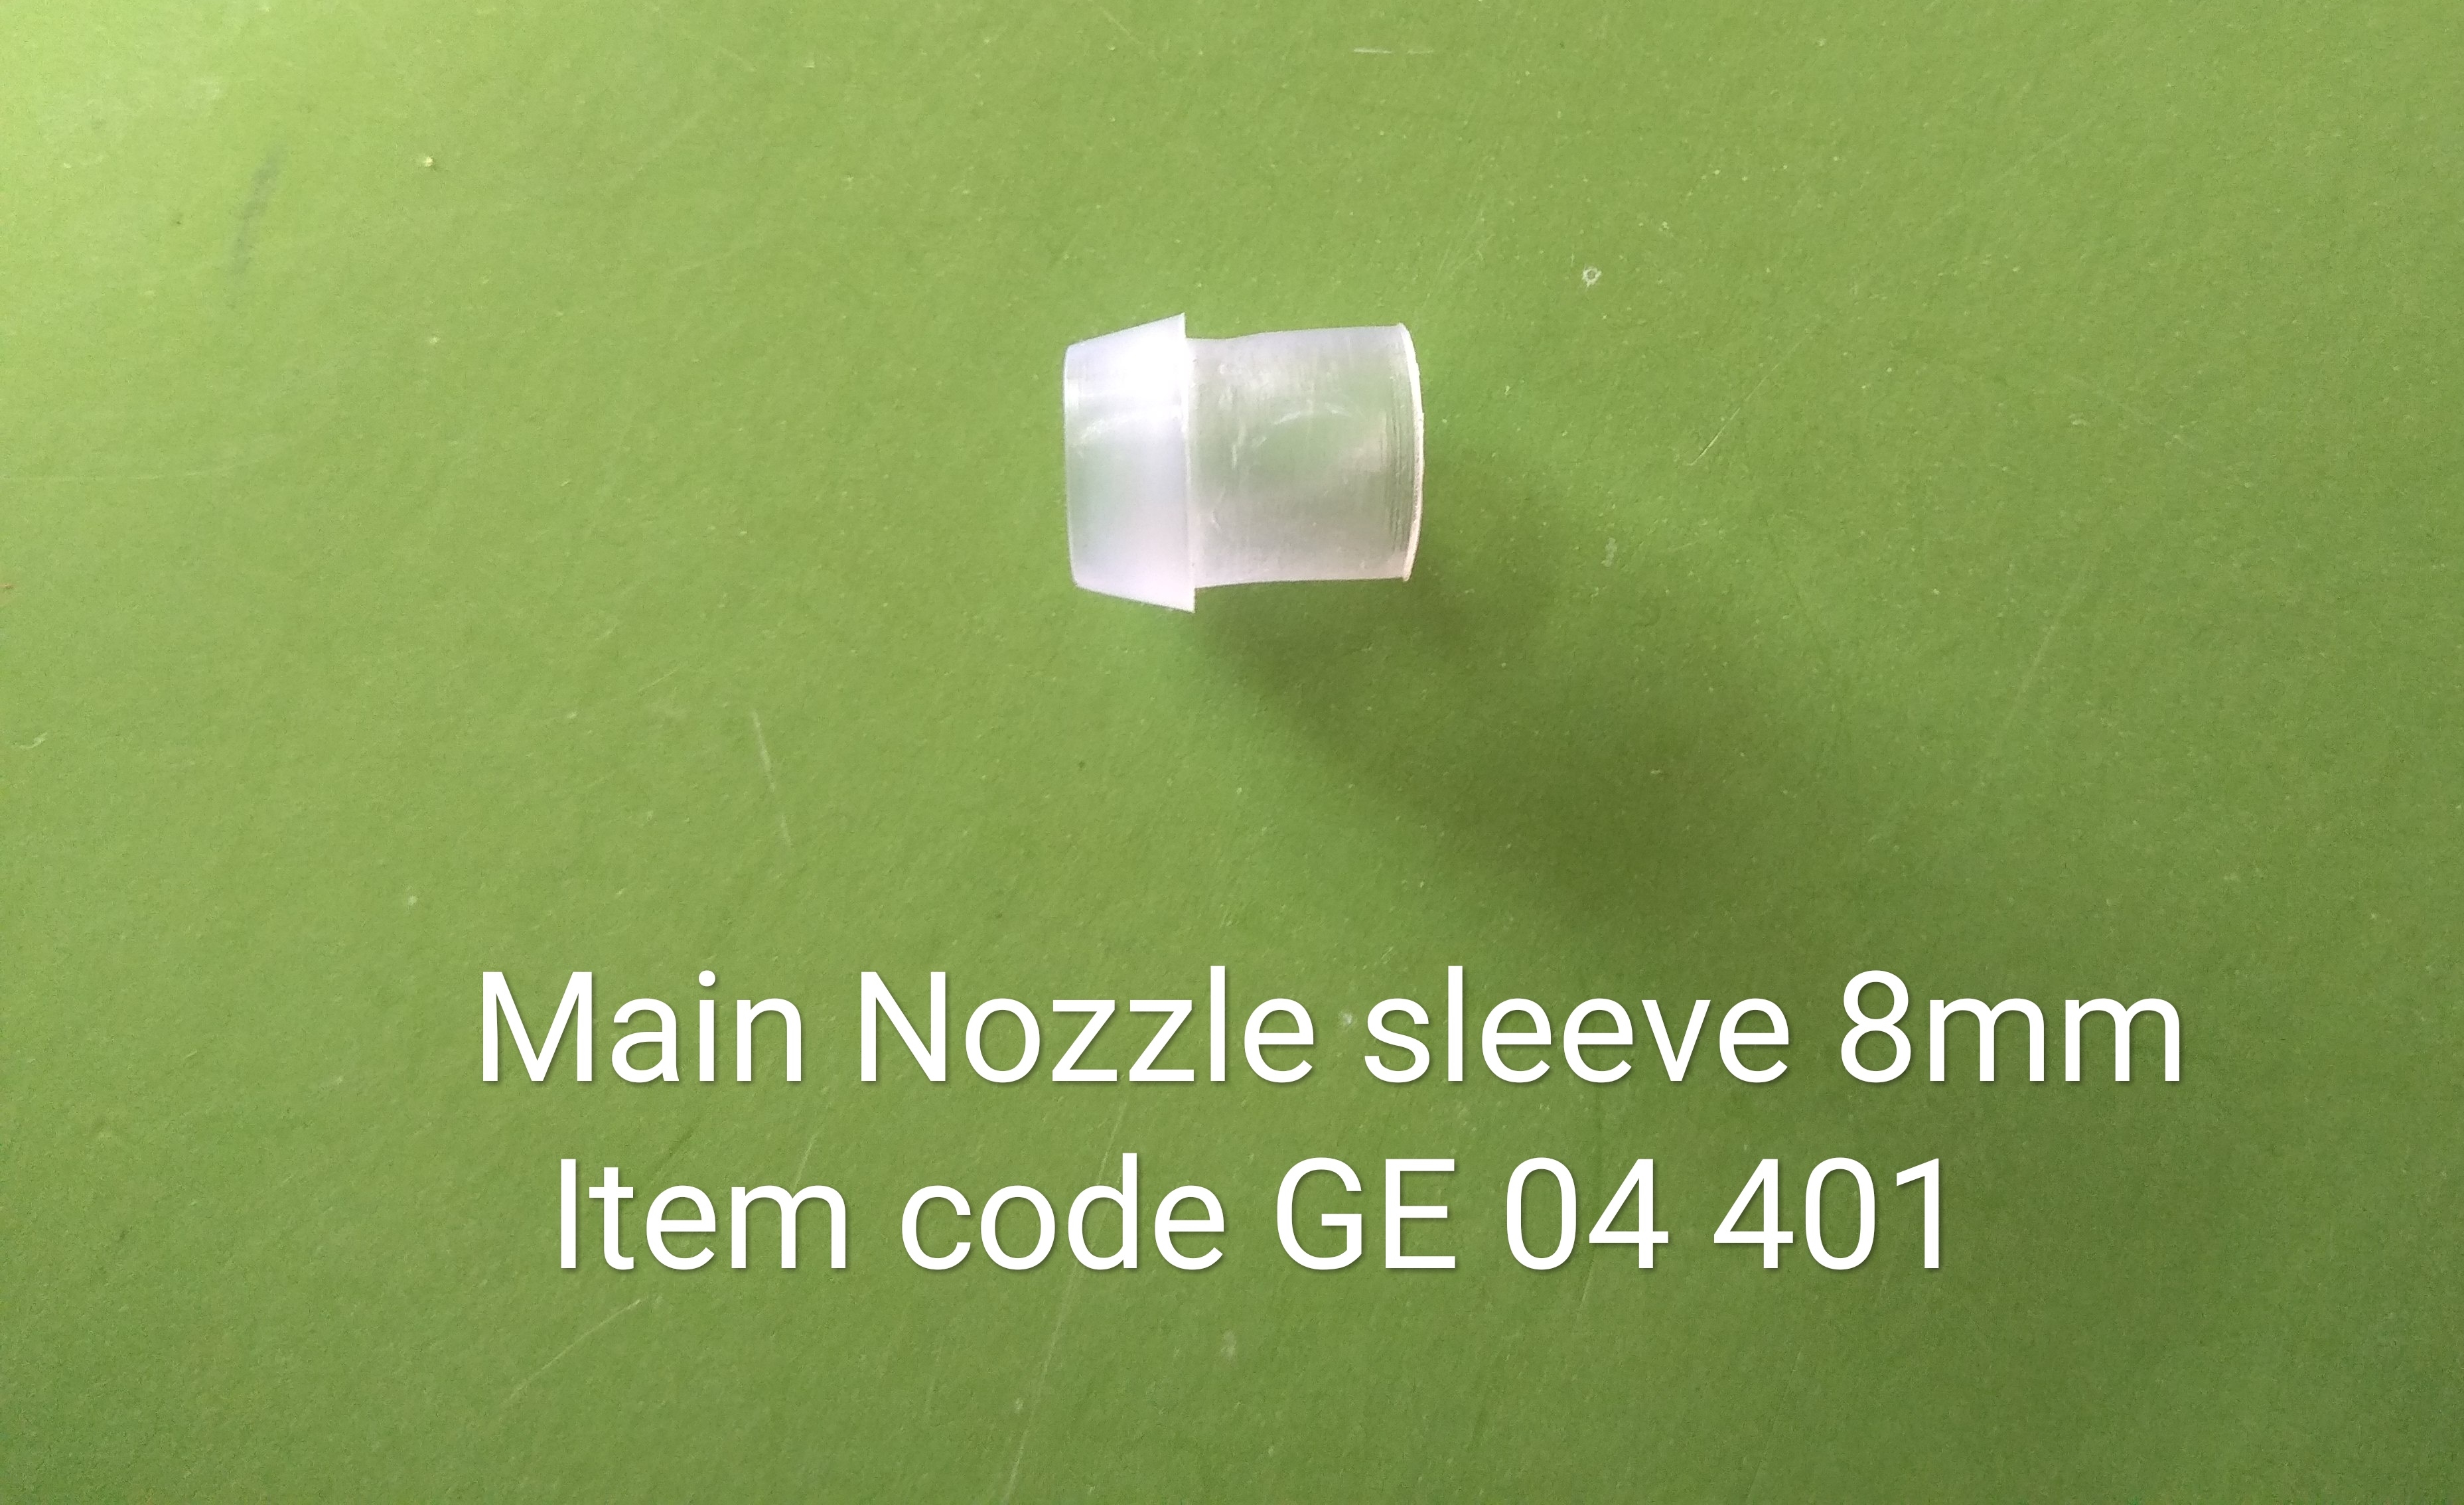 GE_04_401_Main_Nozzle_Sleeve_8mm_1_18.jpg